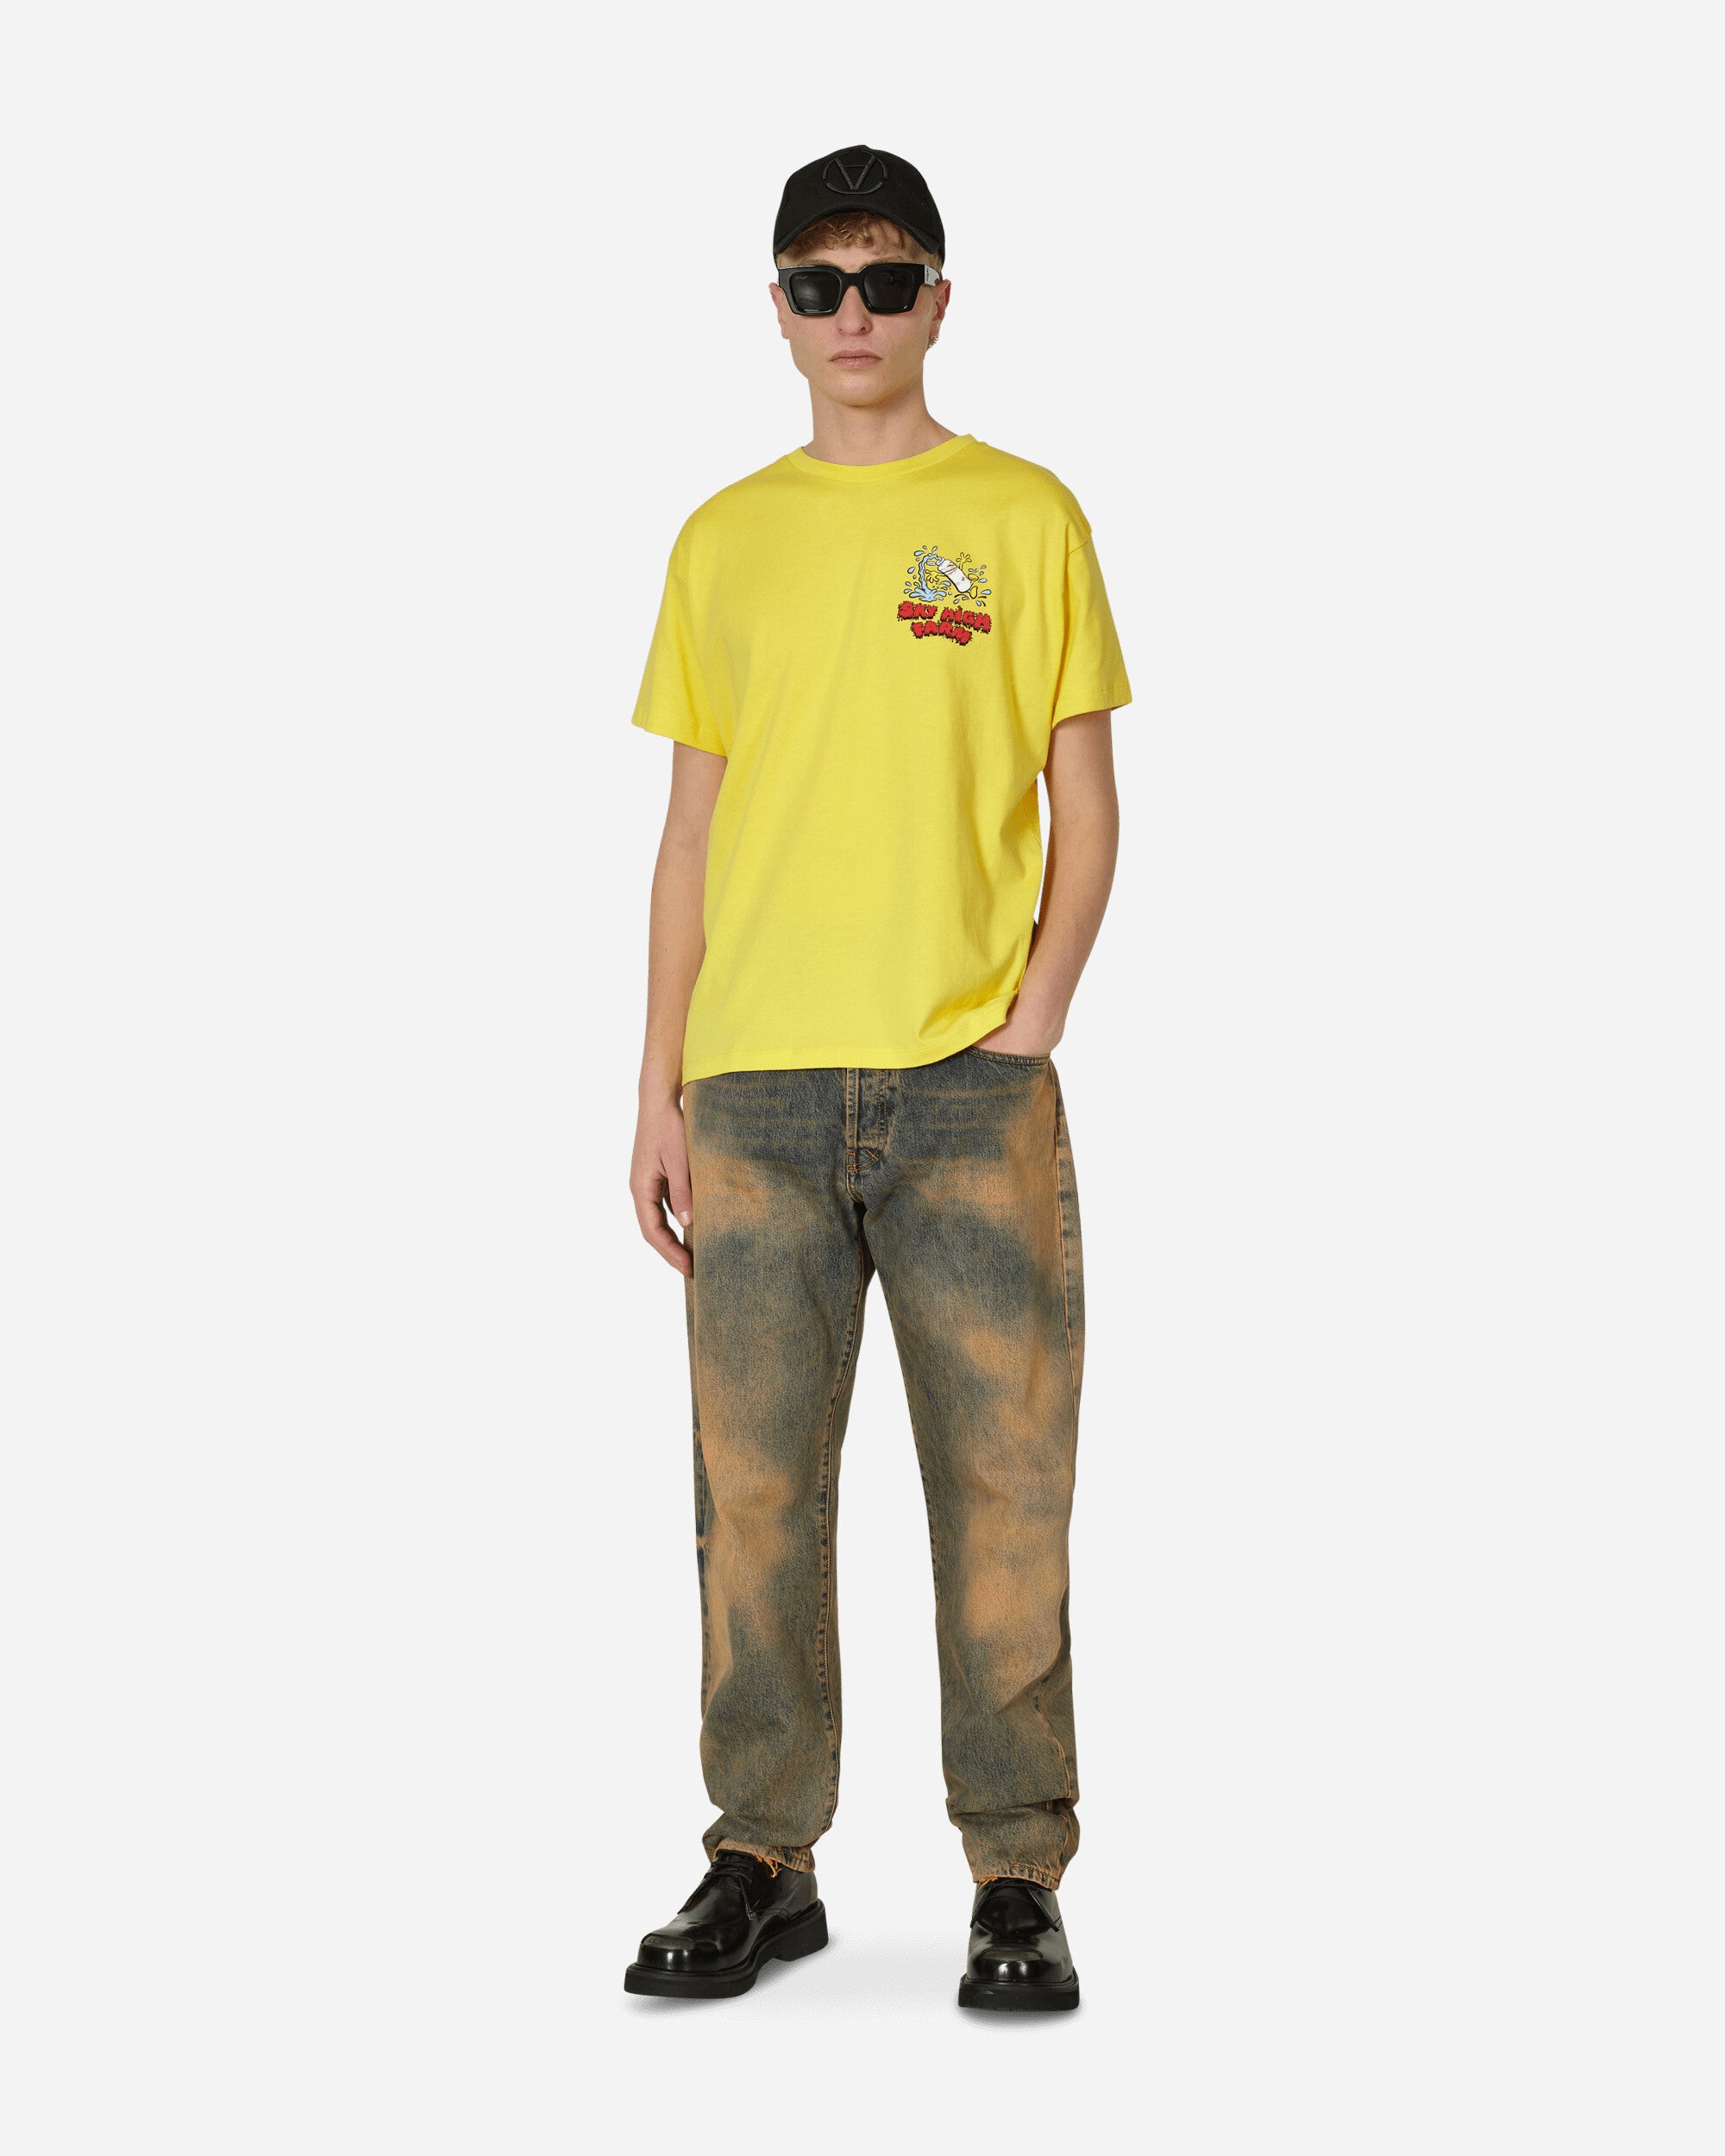 Sky High Farm Flatbush Printed Tshirt Yellow T-Shirts Shortsleeve SHF03T003 1